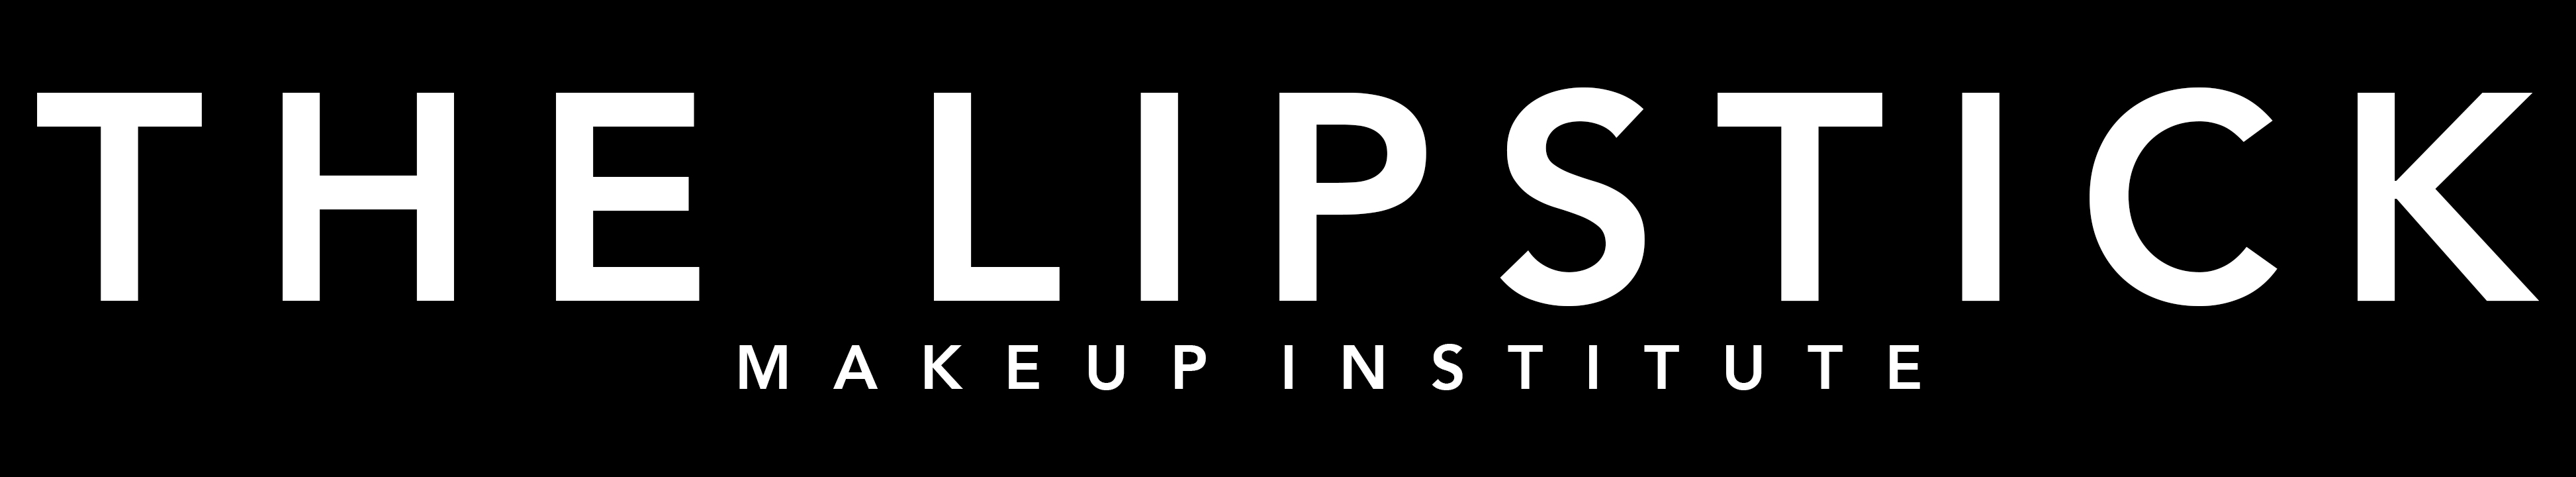 Lipstick logo white - The Lipstick Make Up Institute